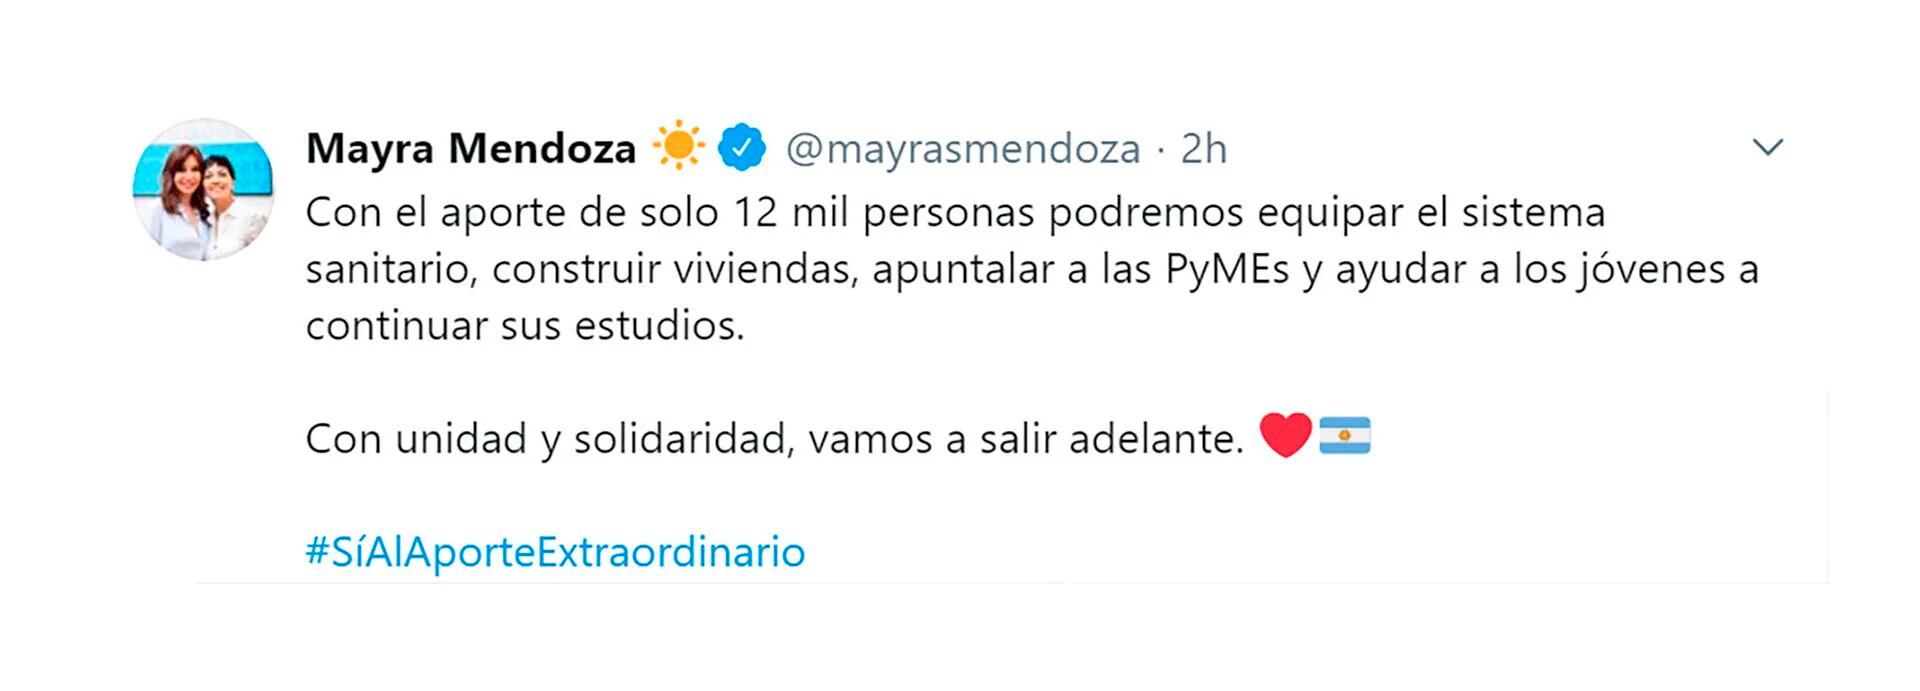 El respaldo de Mayra Mendoza al proyecto de impuesto a la riqueza 